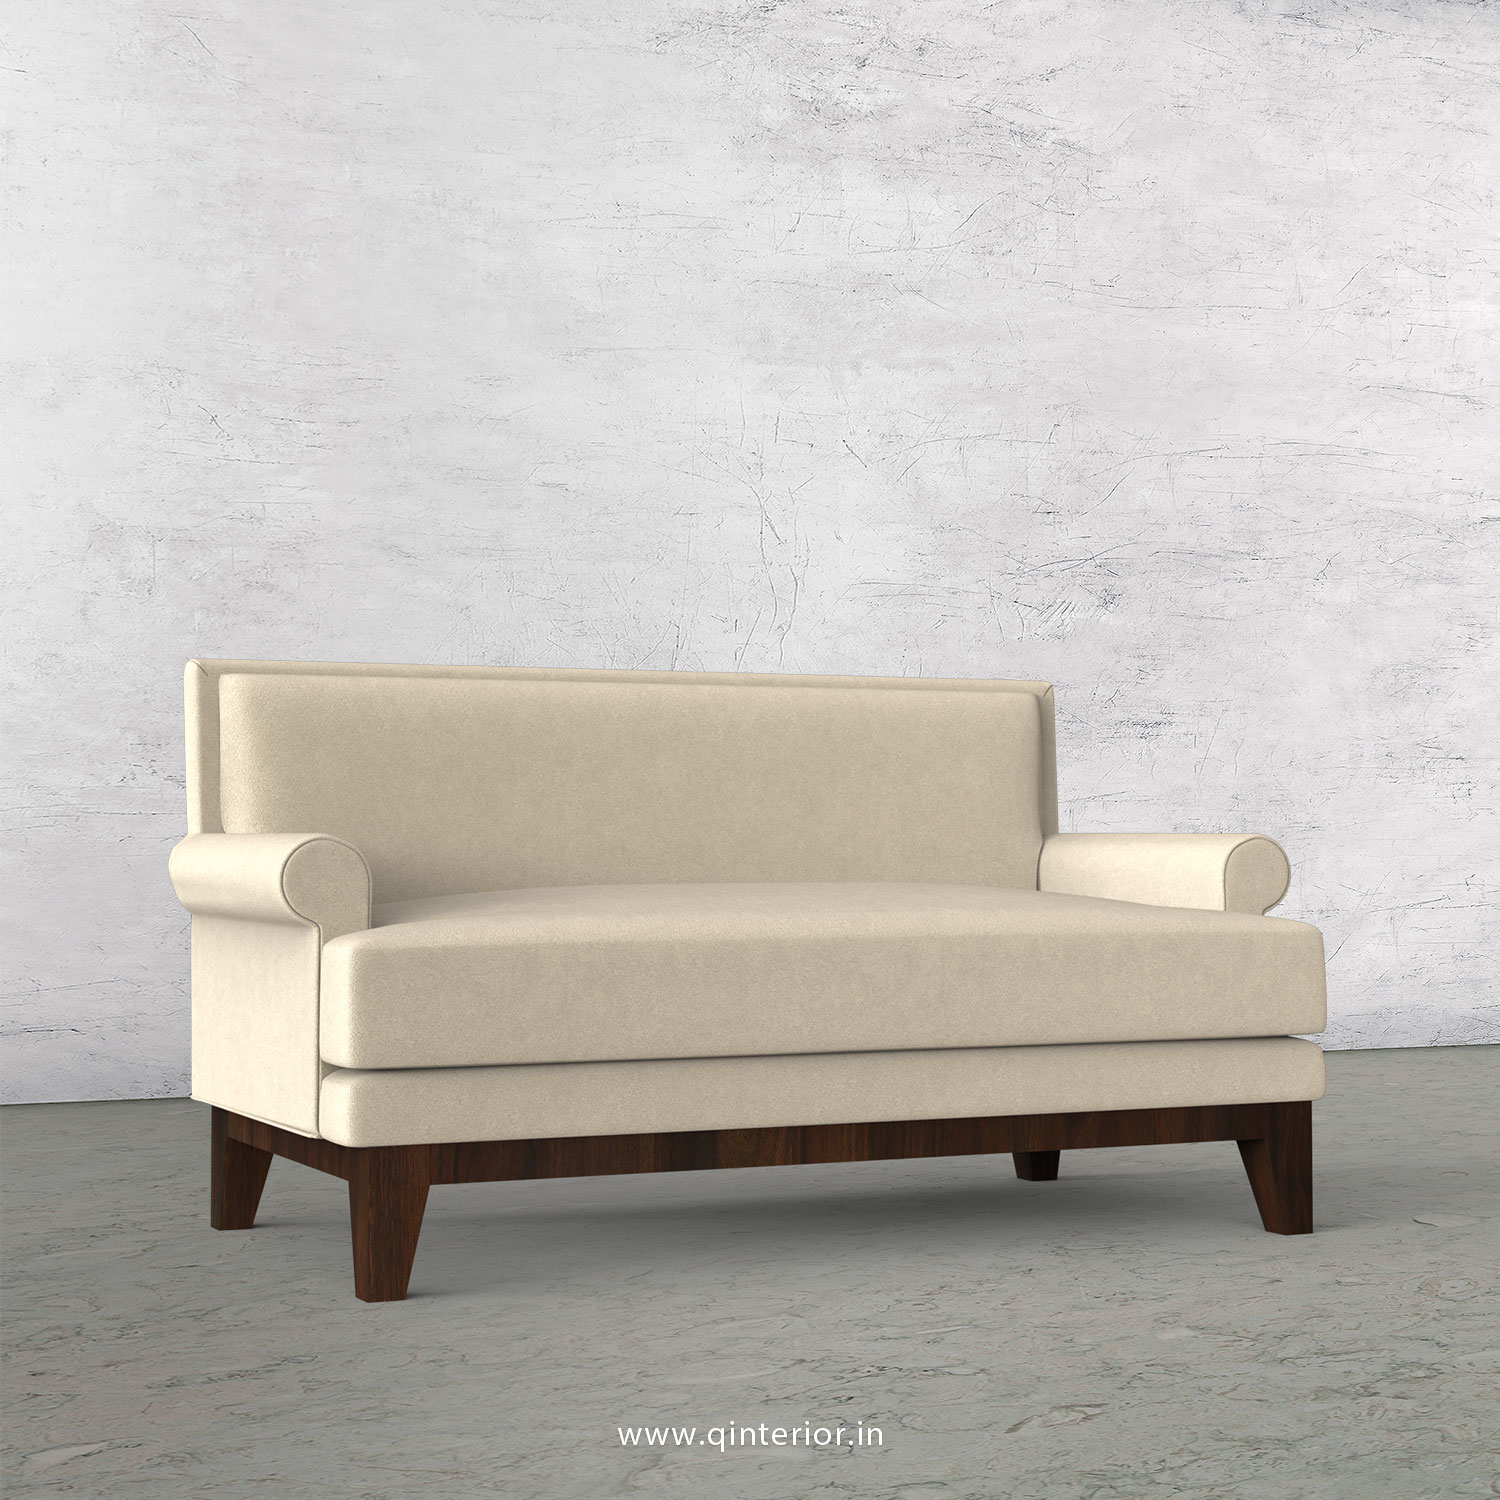 Aviana 2 Seater Sofa in Velvet Fabric - SFA001 VL01